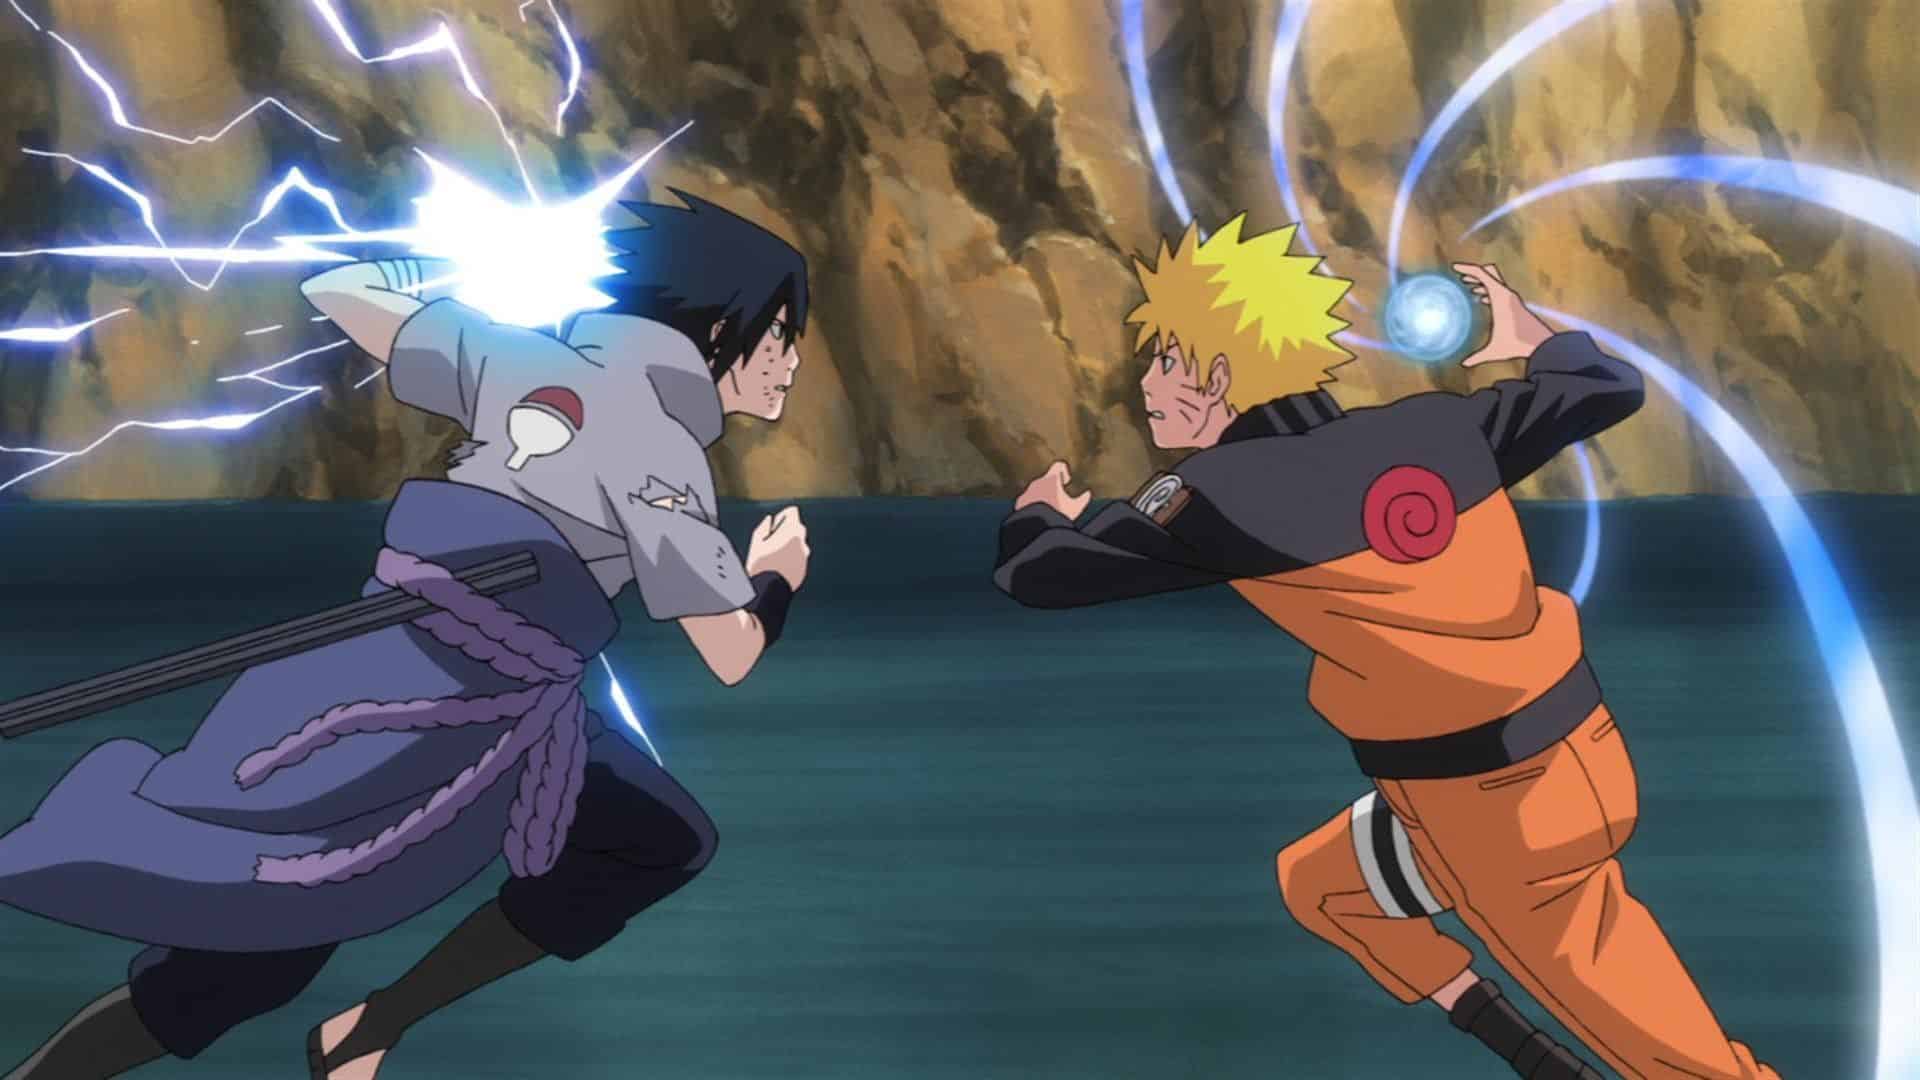 Nếu bạn là fan của anime hành động, ảnh đánh nhau anime này sẽ khiến bạn mãn nhãn! Cùng đắm chìm vào cuộc chiến đầy máu lửa của các anh hùng nhé!